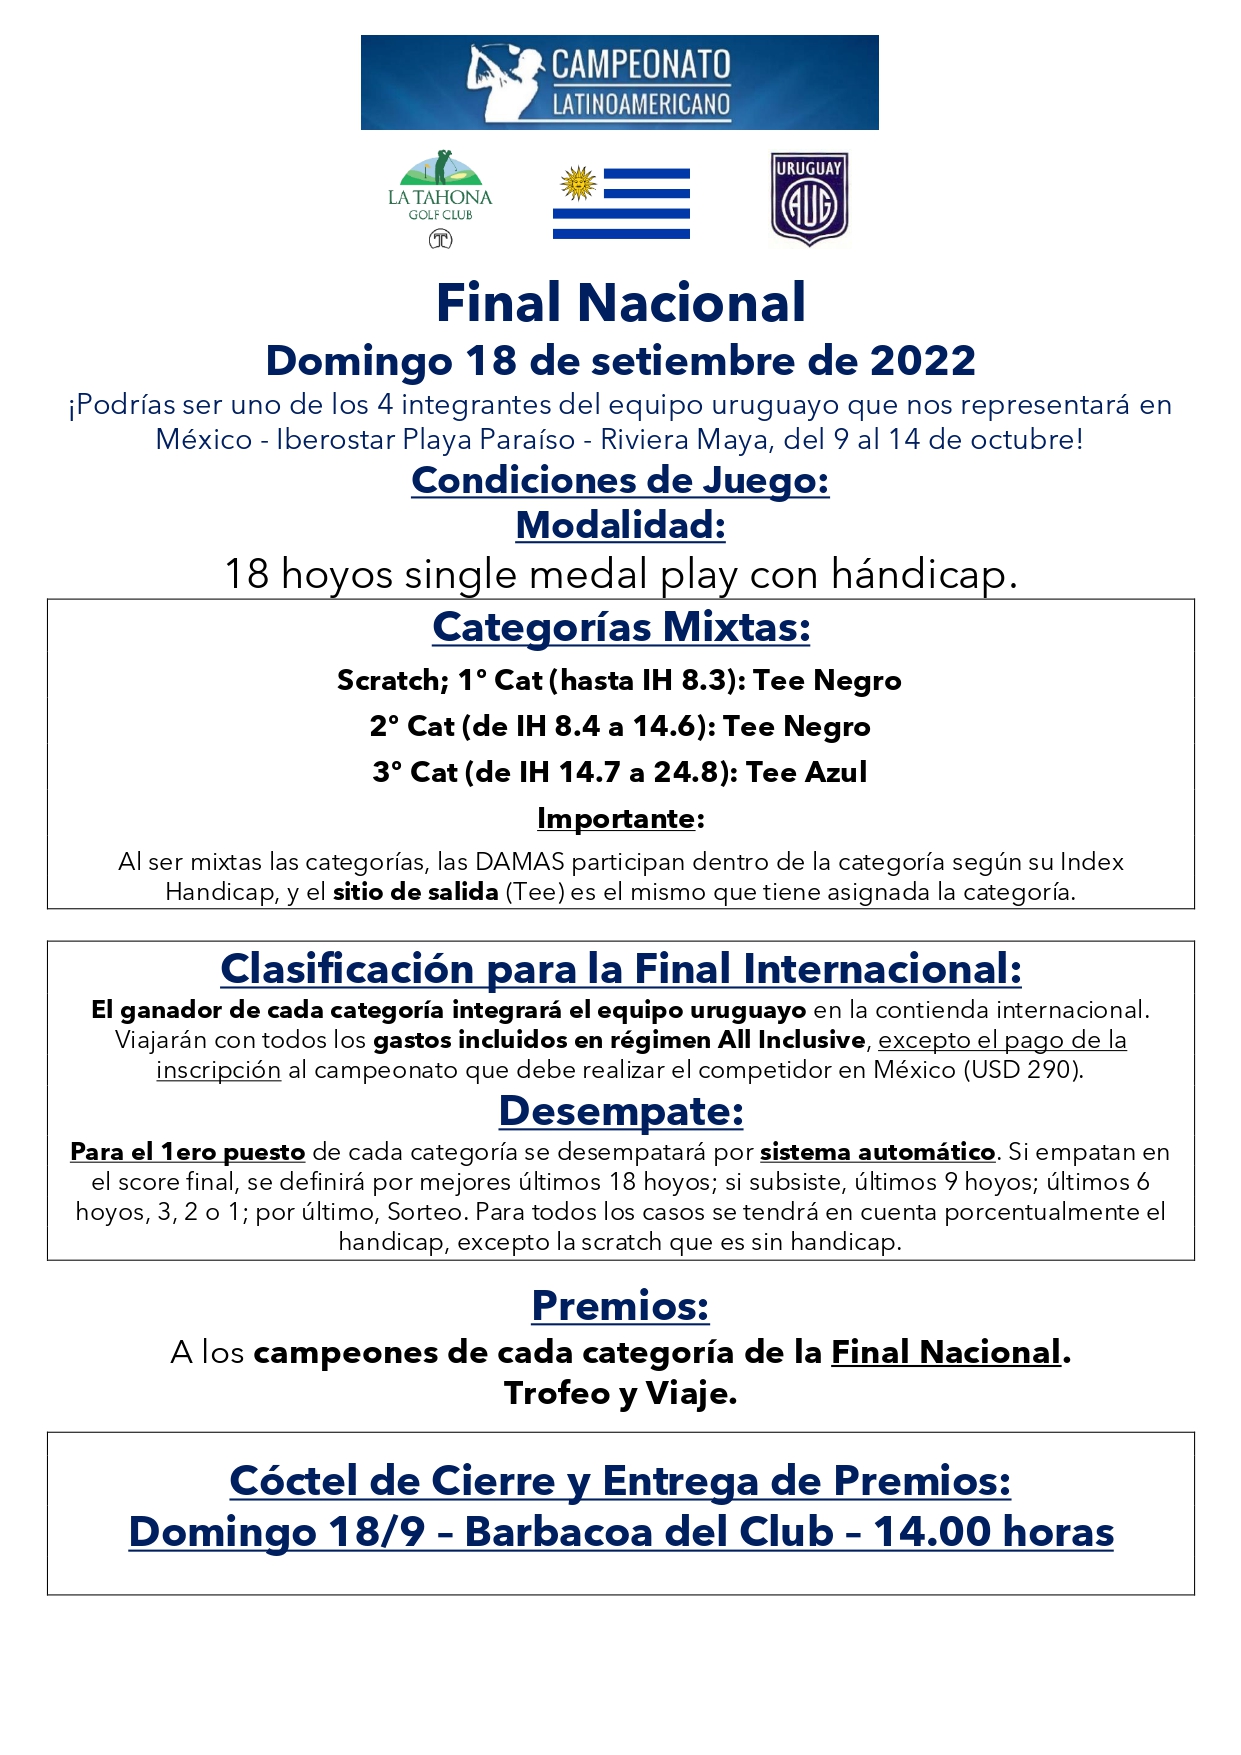 FINAL NACIONAL CTO. LATINOAMERICANO 2022  Condiciones de Juego